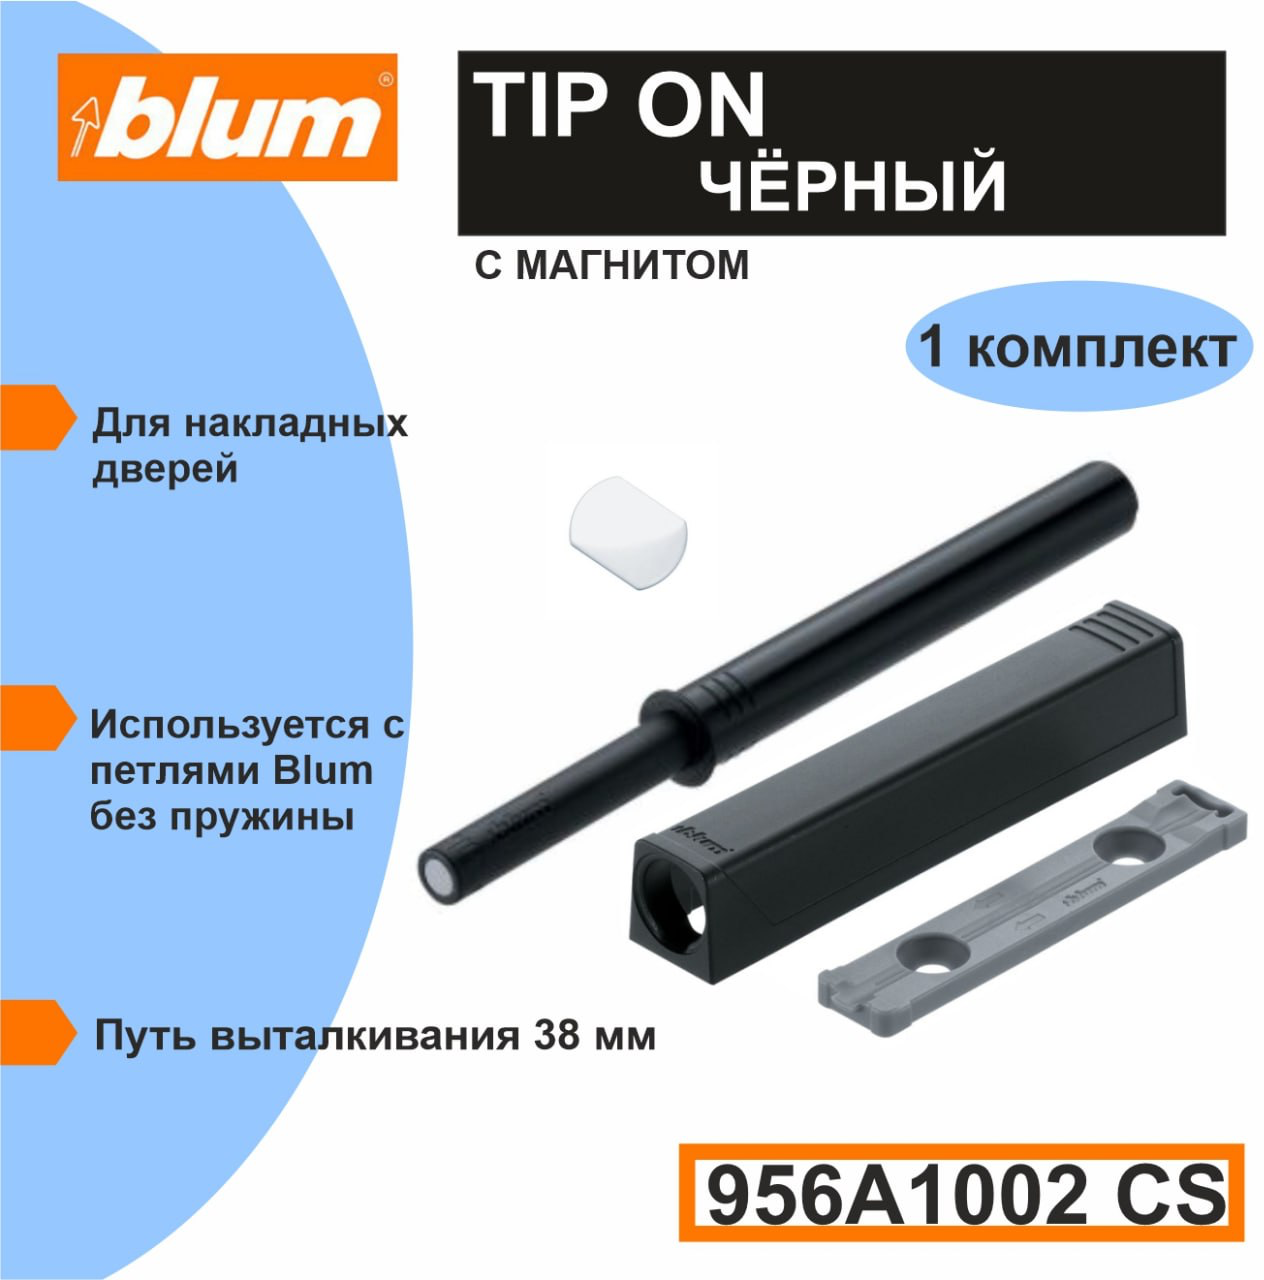 TIP-ON Blum 956A1002CS - толкатель фасада (Push-to-open) длинный черный в комплекте с держателем и пластиной на клею - 1 комплект